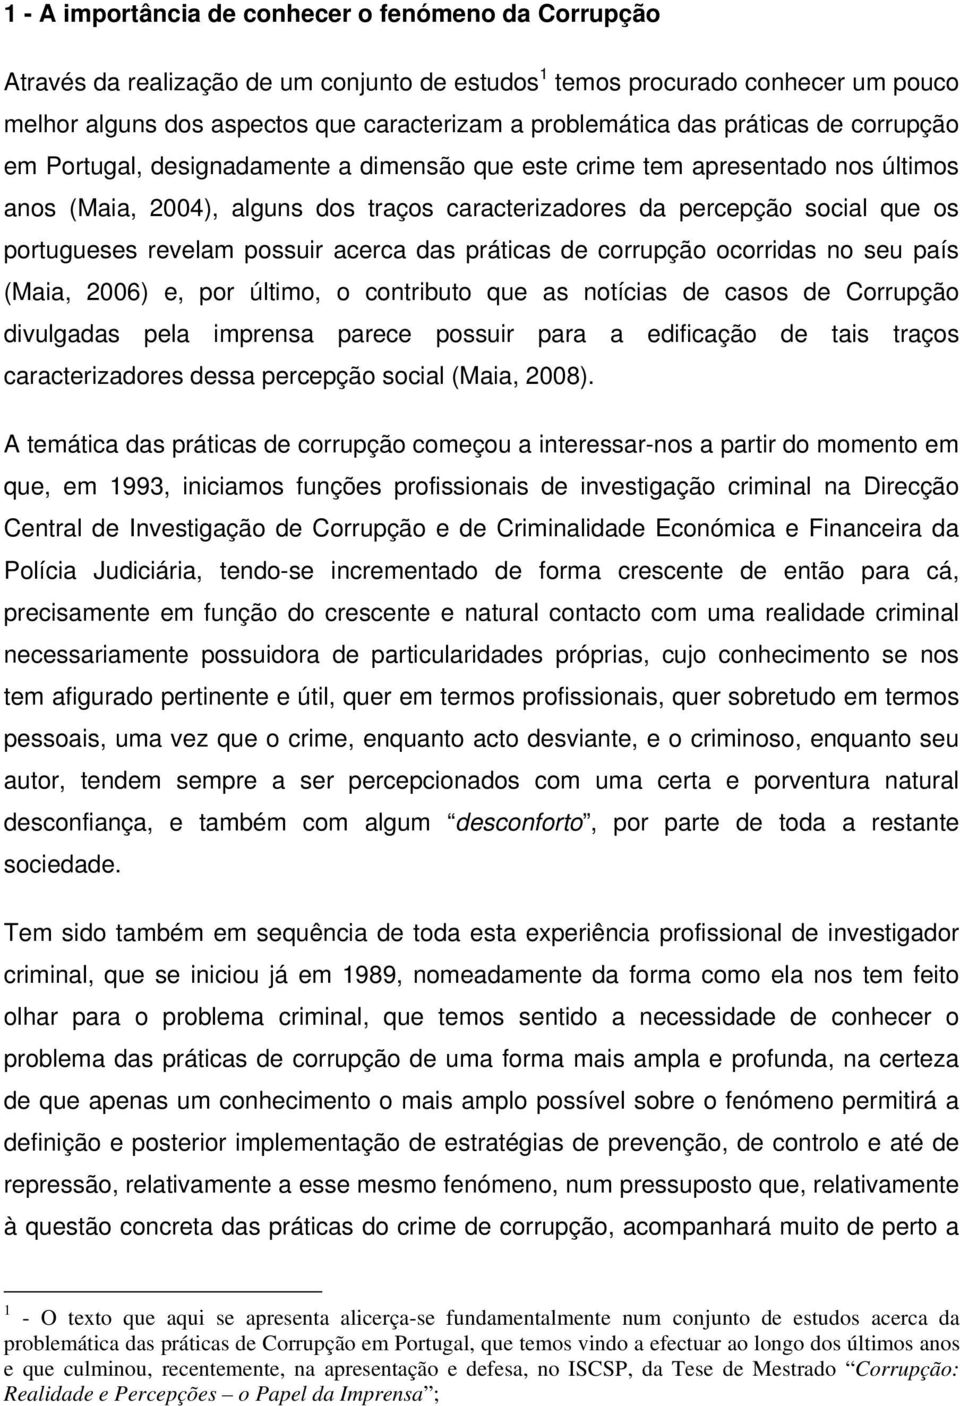 portugueses revelam possuir acerca das práticas de corrupção ocorridas no seu país (Maia, 2006) e, por último, o contributo que as notícias de casos de Corrupção divulgadas pela imprensa parece